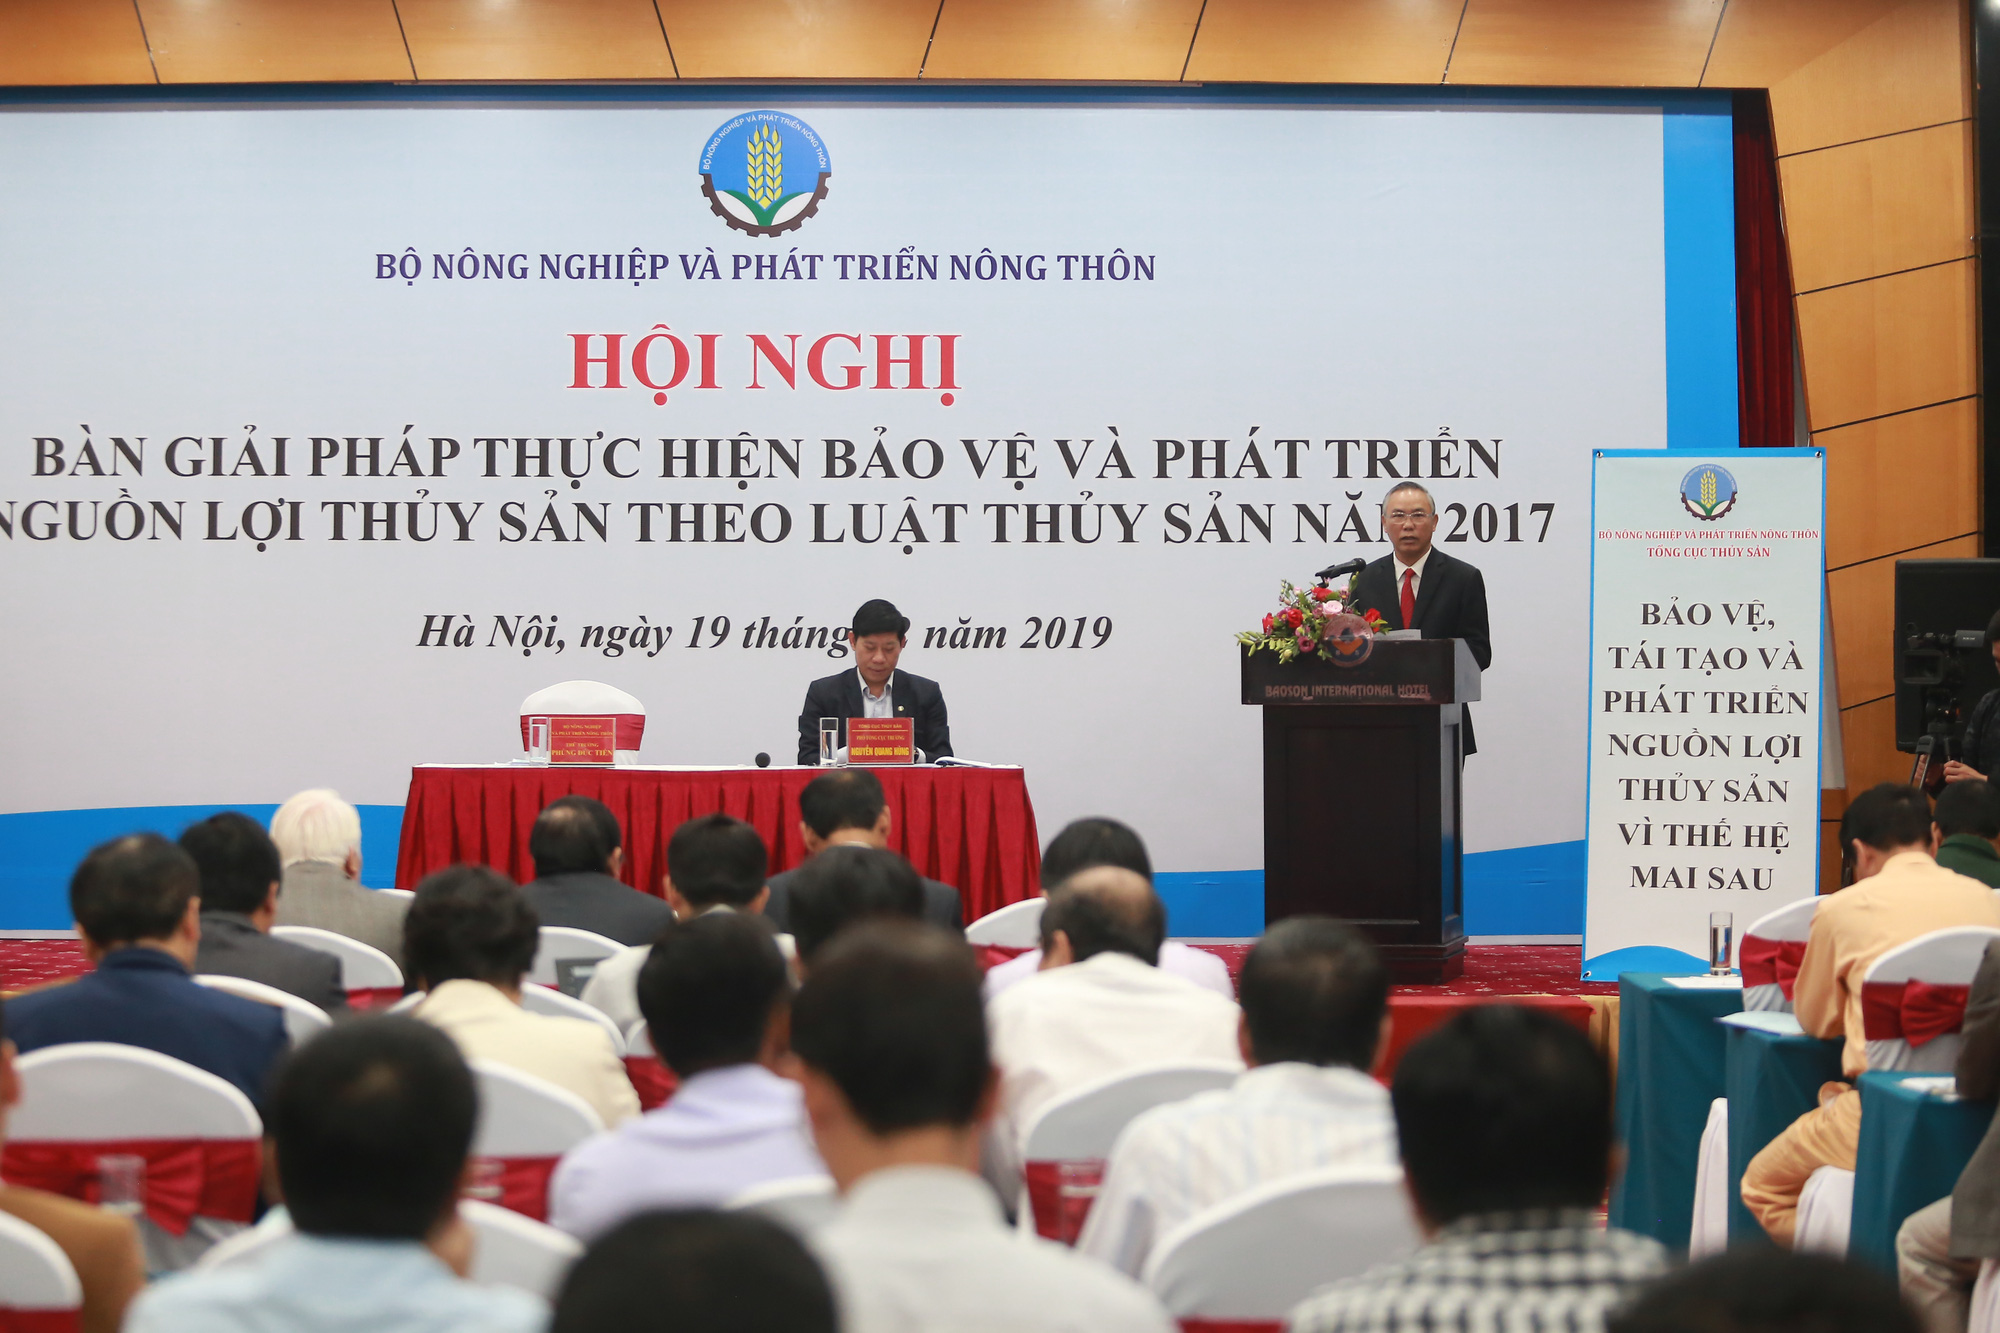 Hội nghị bàn giải pháp bảo tồn và phát triển nguồn lợi thủy sản do Tổng cục Thủy sản (Bộ NN&PTNT) tổ chức ngày 19/12 tại Hà Nội.